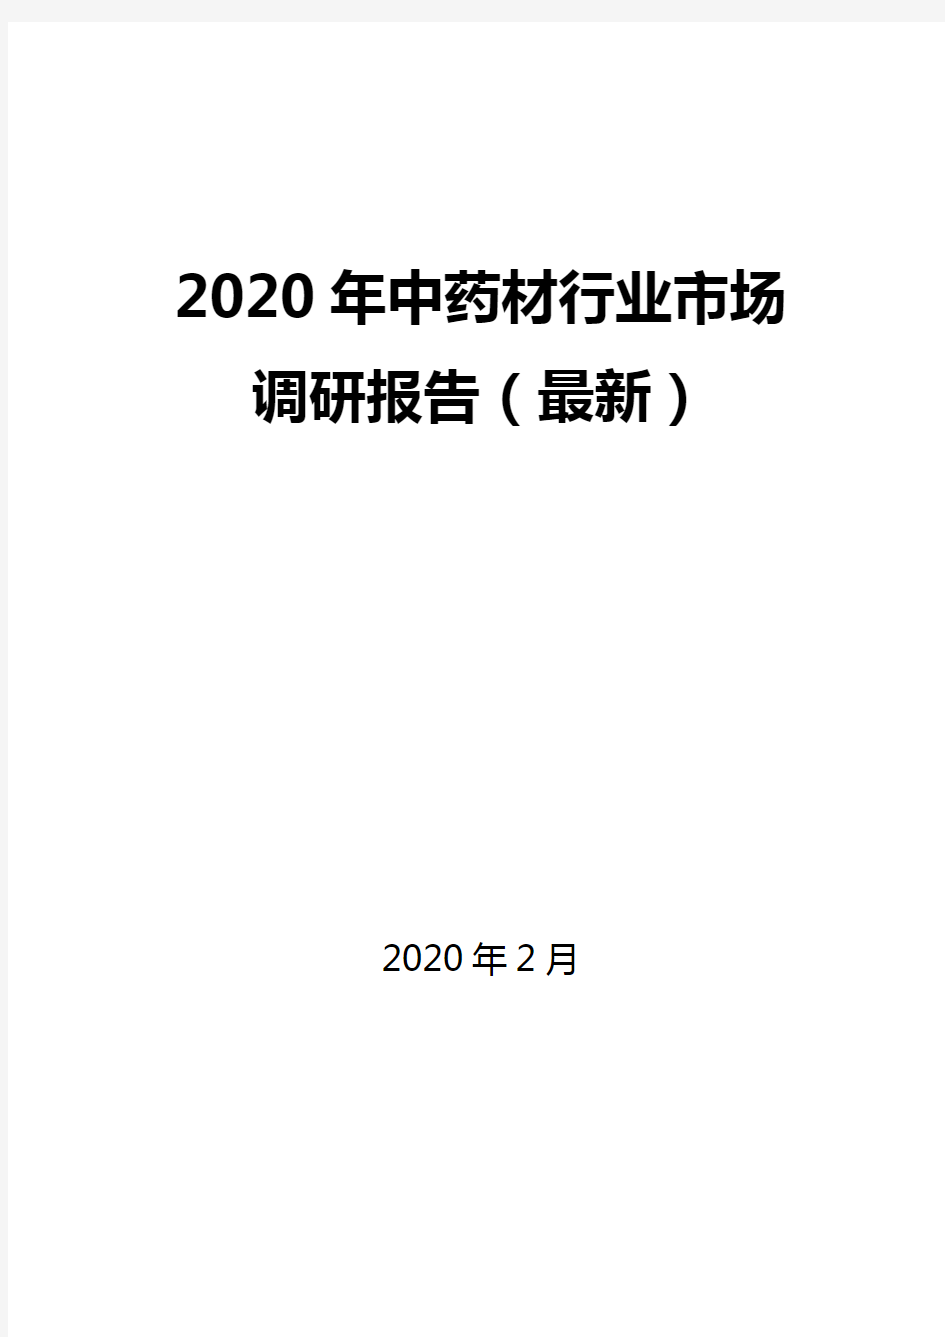 2020年中药材行业市场调研报告(最新